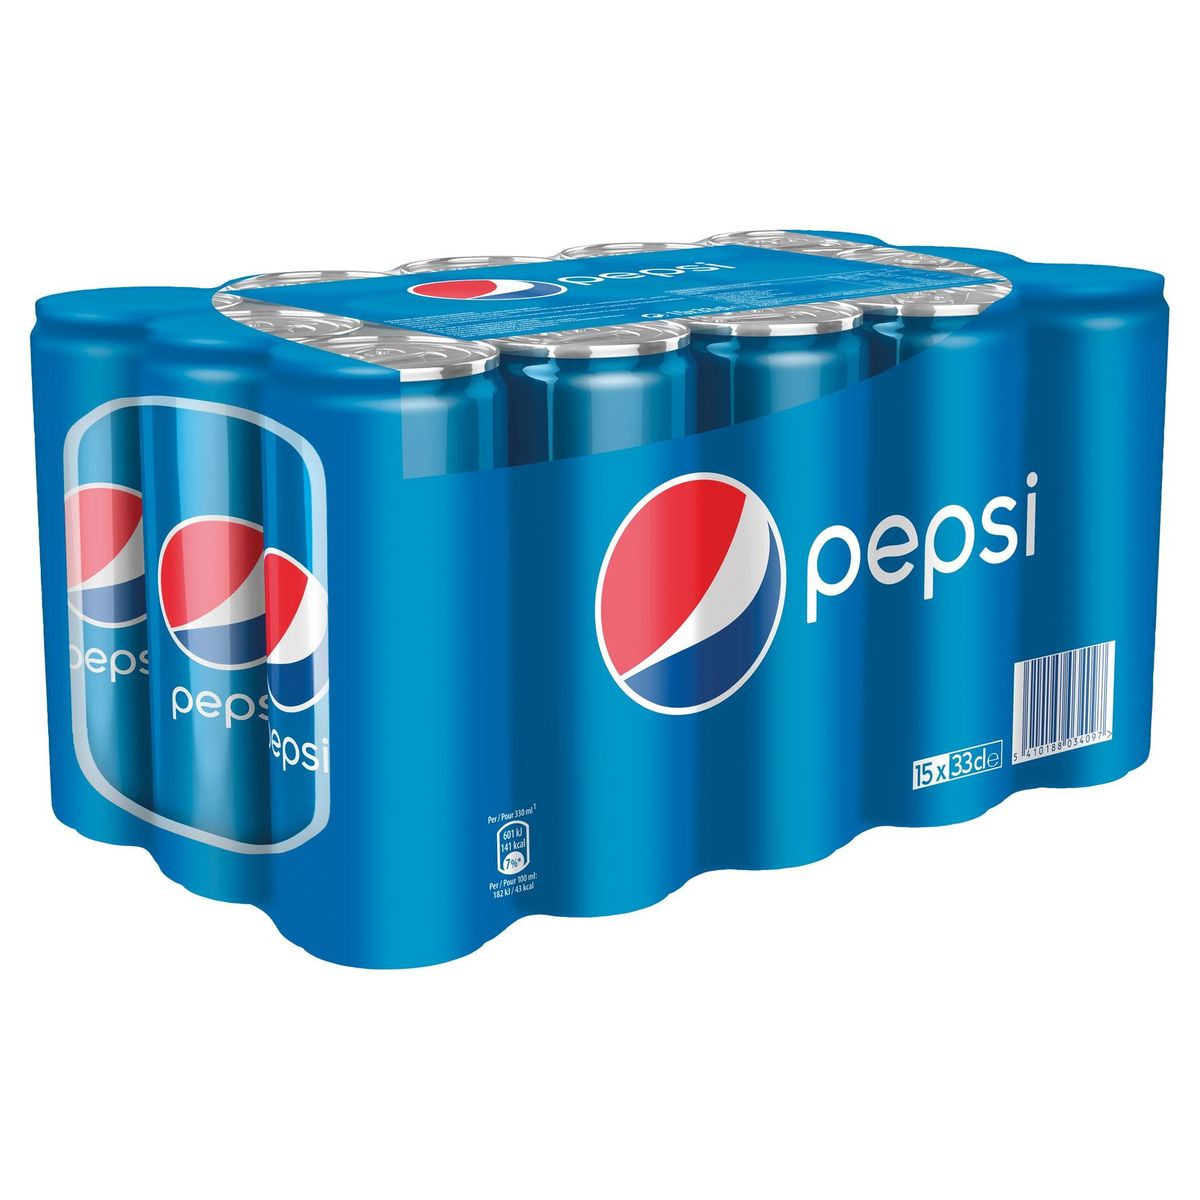 Pepsi Regular Cola 15x33 cl